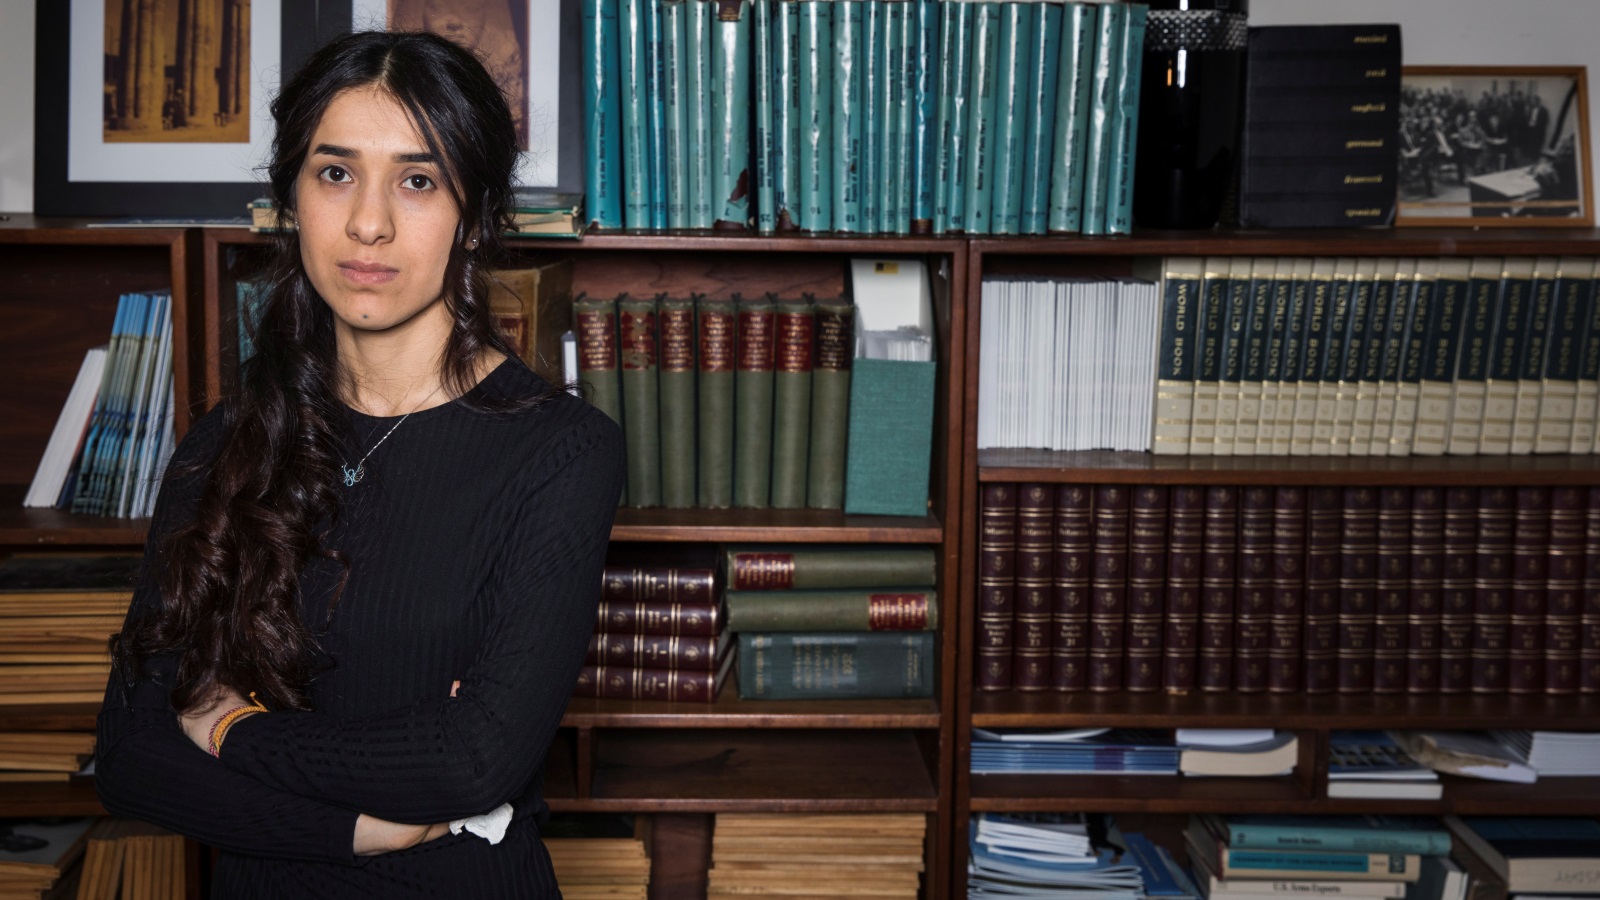 قالت نادية مراد في منشور لها على الانترنت: لقد قلت كلاما كثيرا ورأيت عملا قليلا، وما زال 3500 من اليزيديين تحت قيد داعش، وارتكبت جرائم شنيعة ضدهم